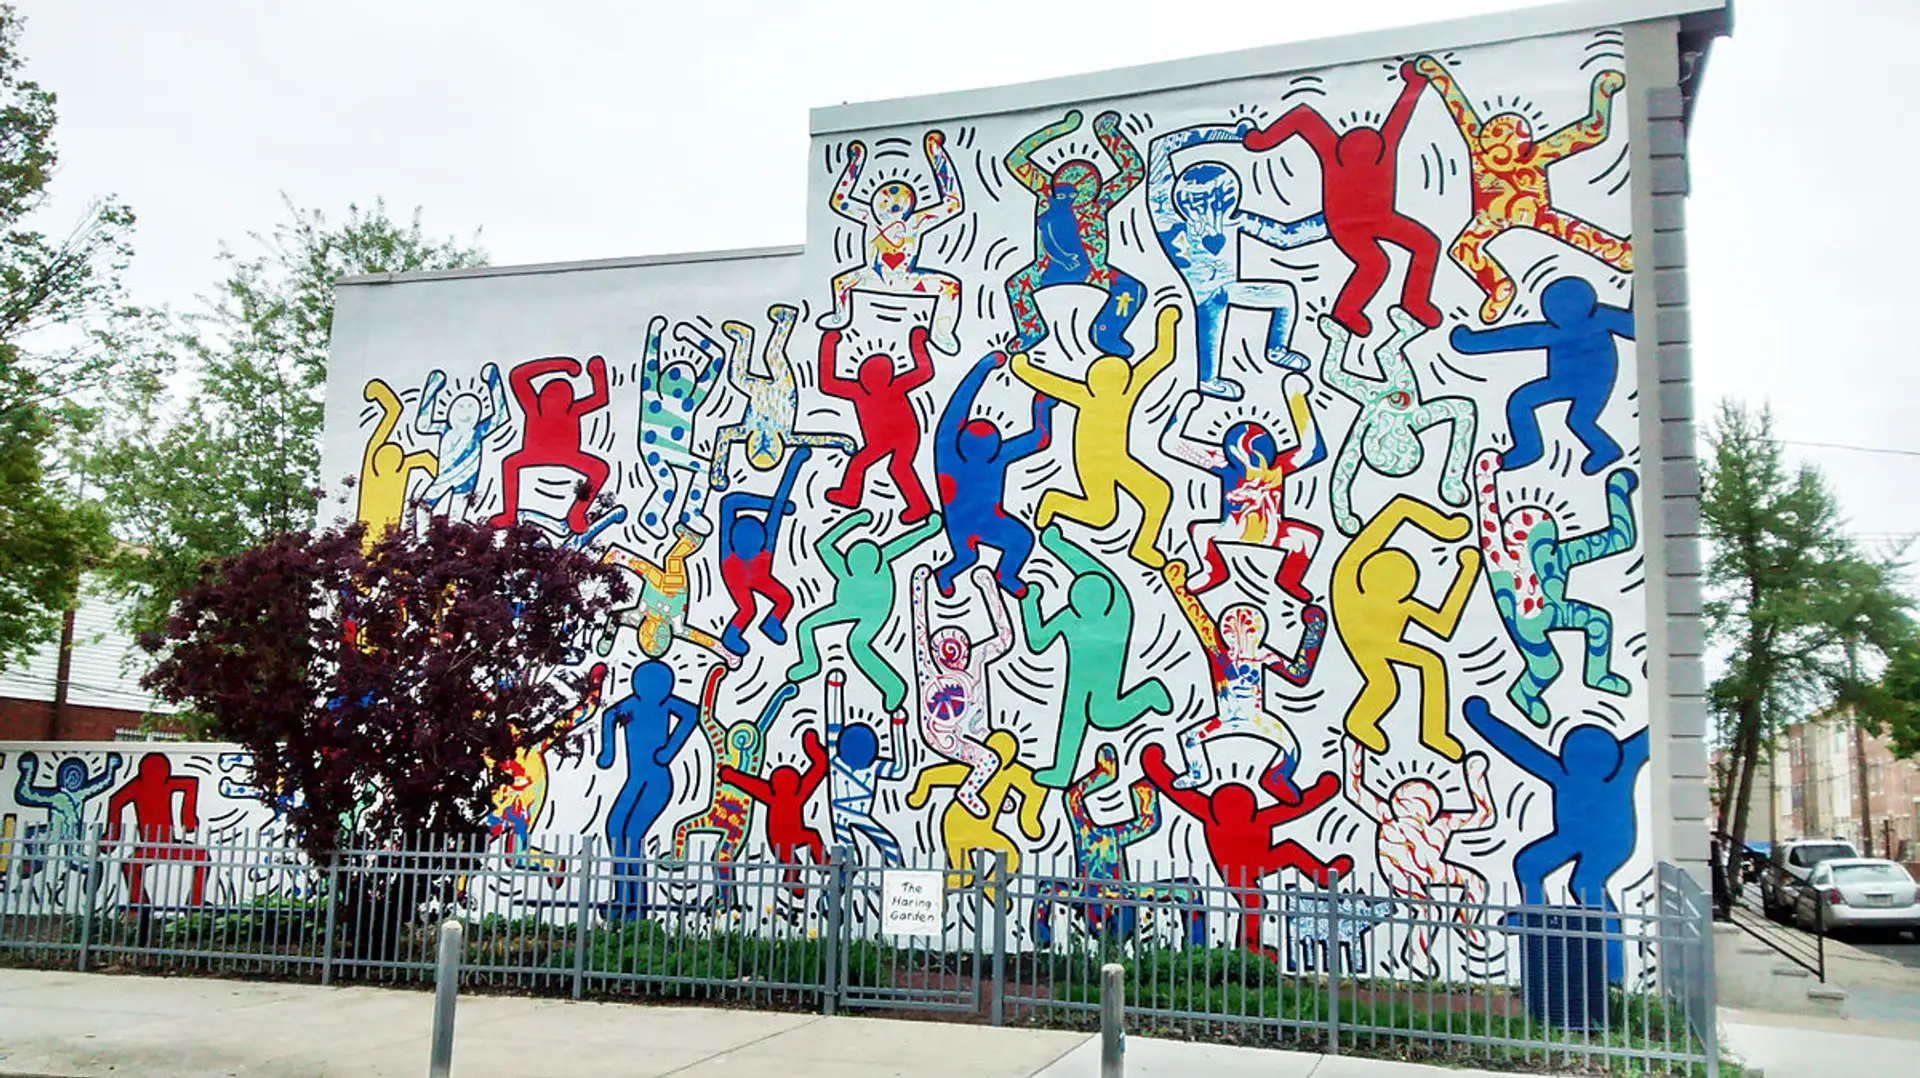 Keith Haring artwork and graffiti artists